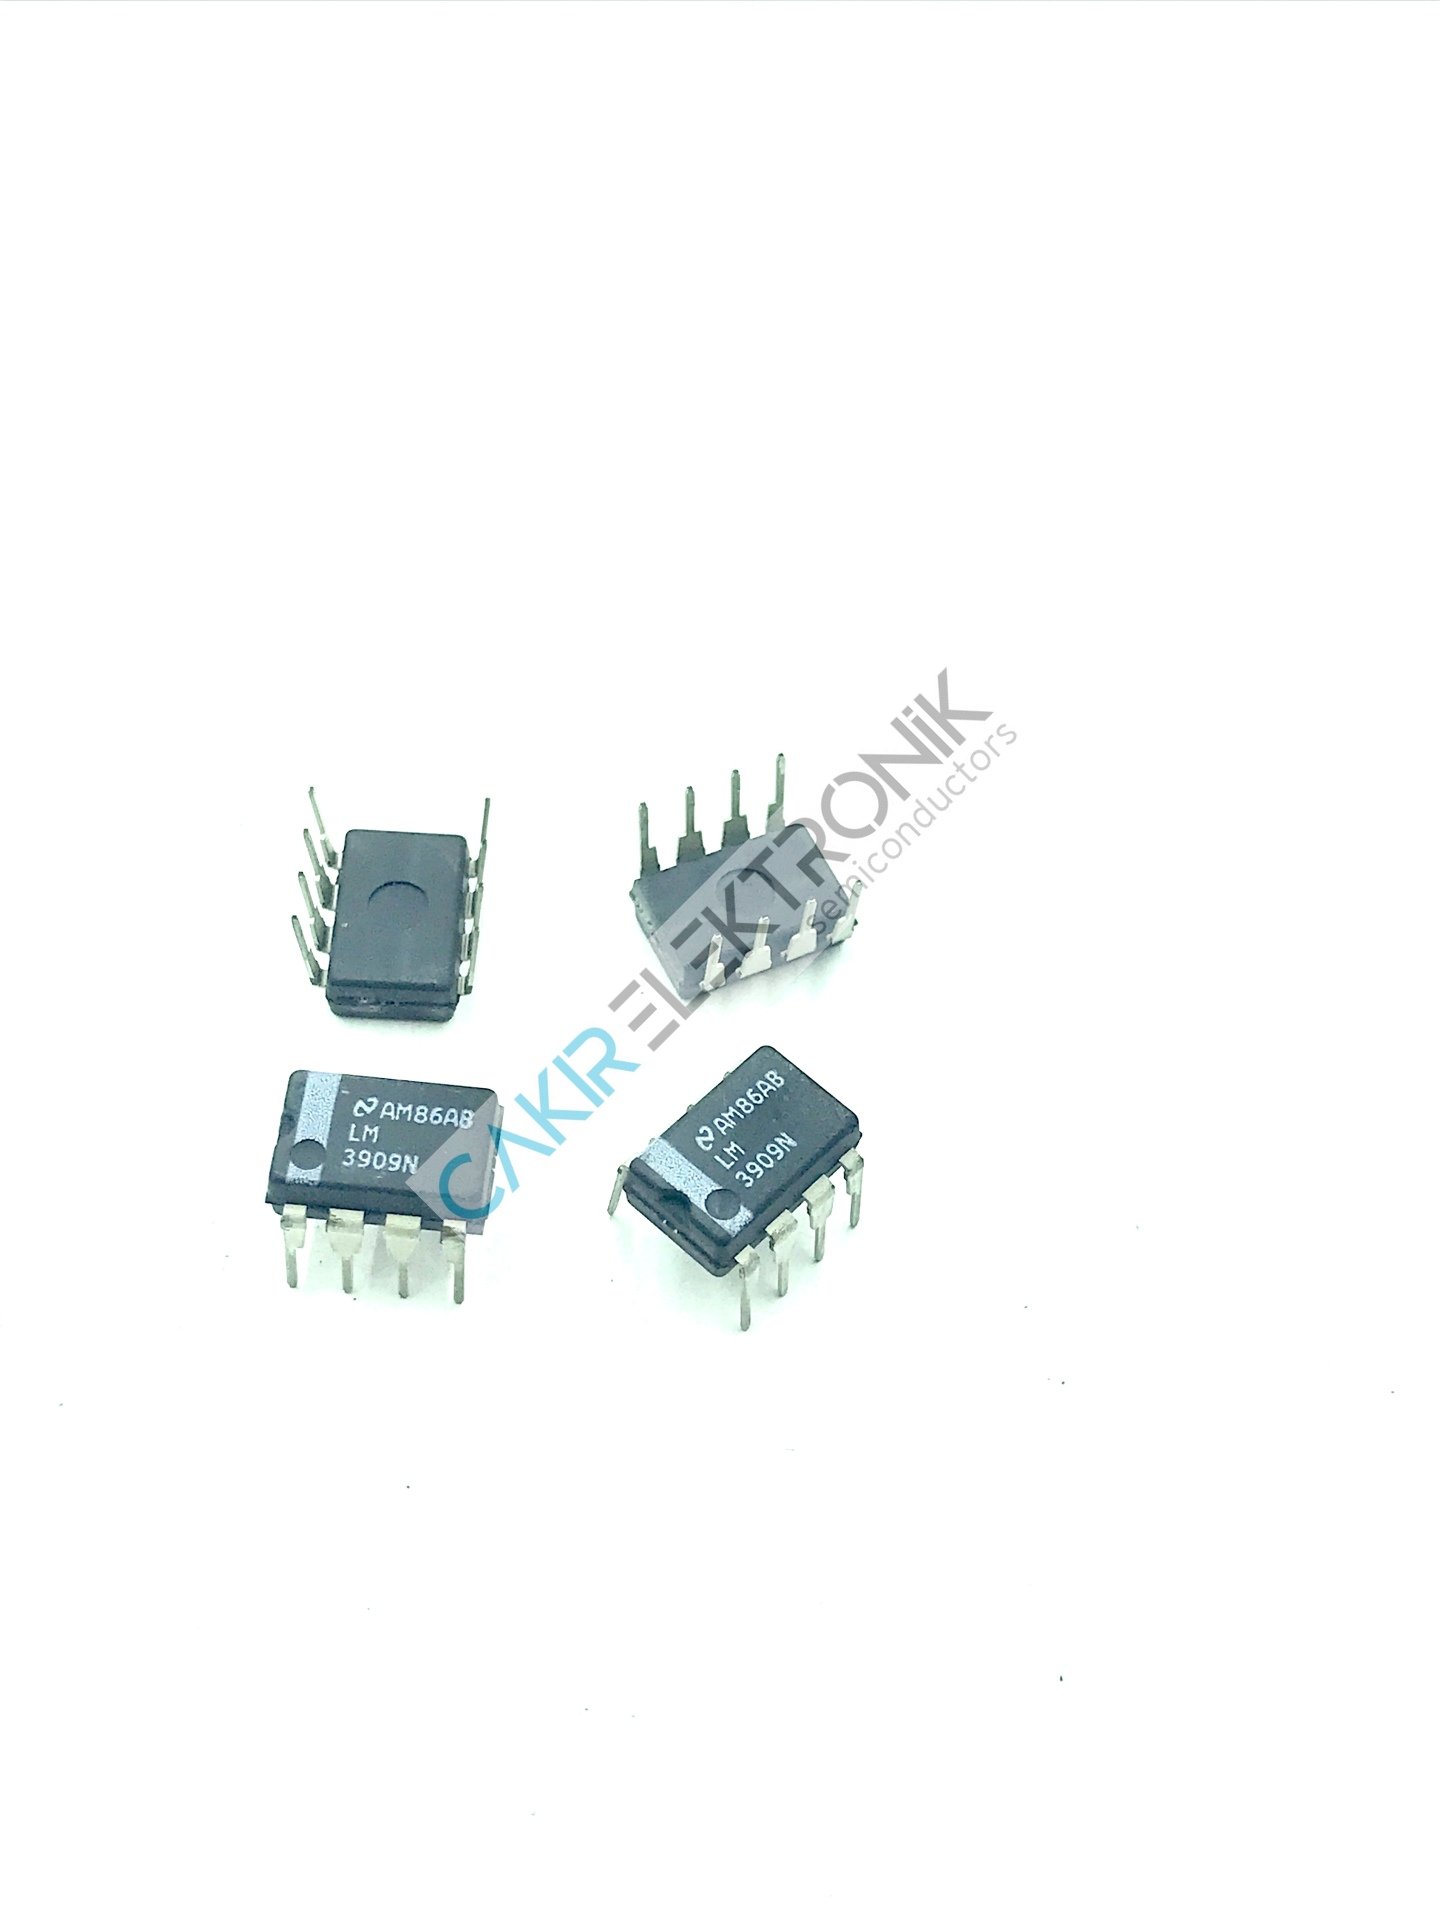 LM3909N - LM3909 - LED Flasher/Oscillator